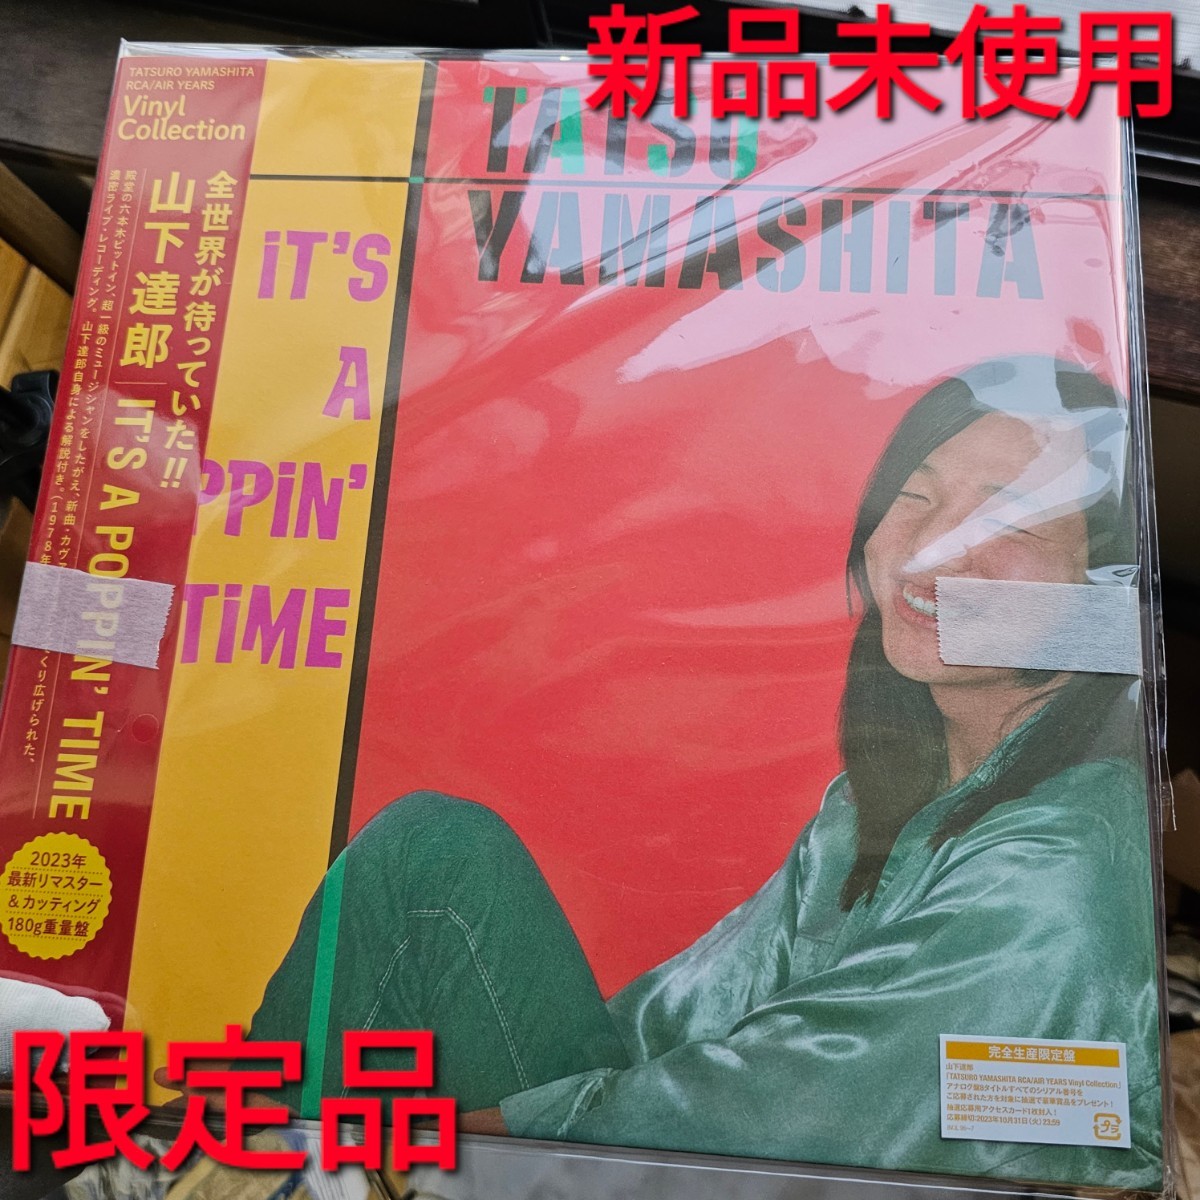 未使用!新品!山下達郎 IT'S A POPPIN' TIME TATSURO YAMASHITA 曲 レコード 限定 Amazon アマゾン ロック ポップス 山下 達郎 歌 人気